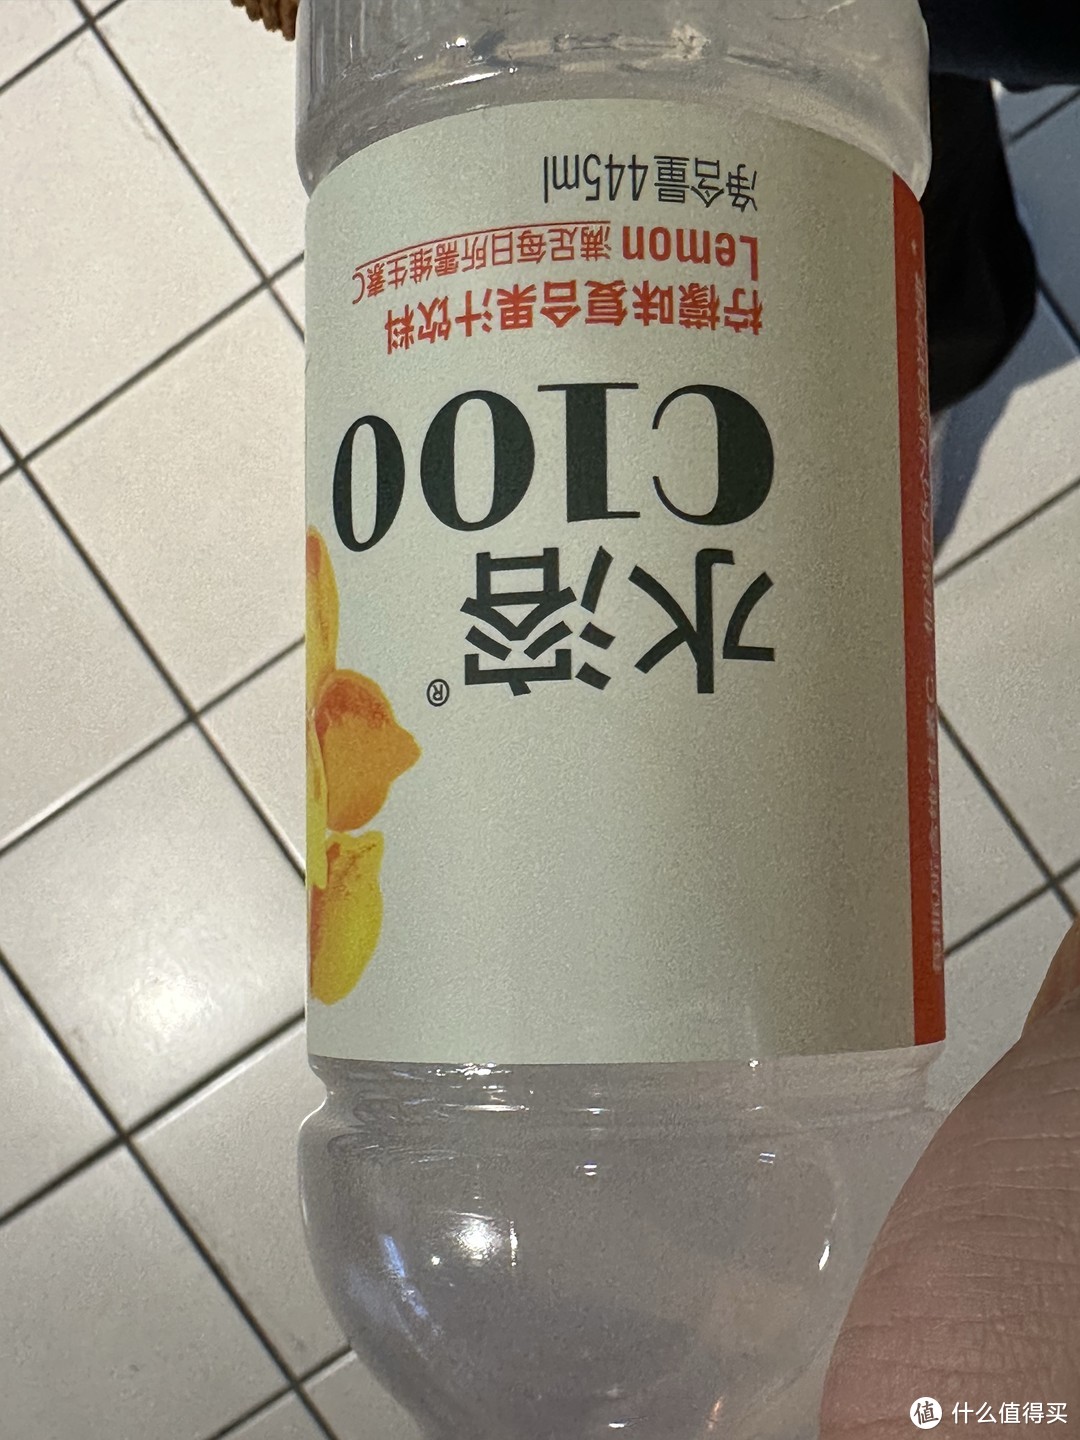 这个水溶C 100的这个柠檬味果汁饮料真的好喝